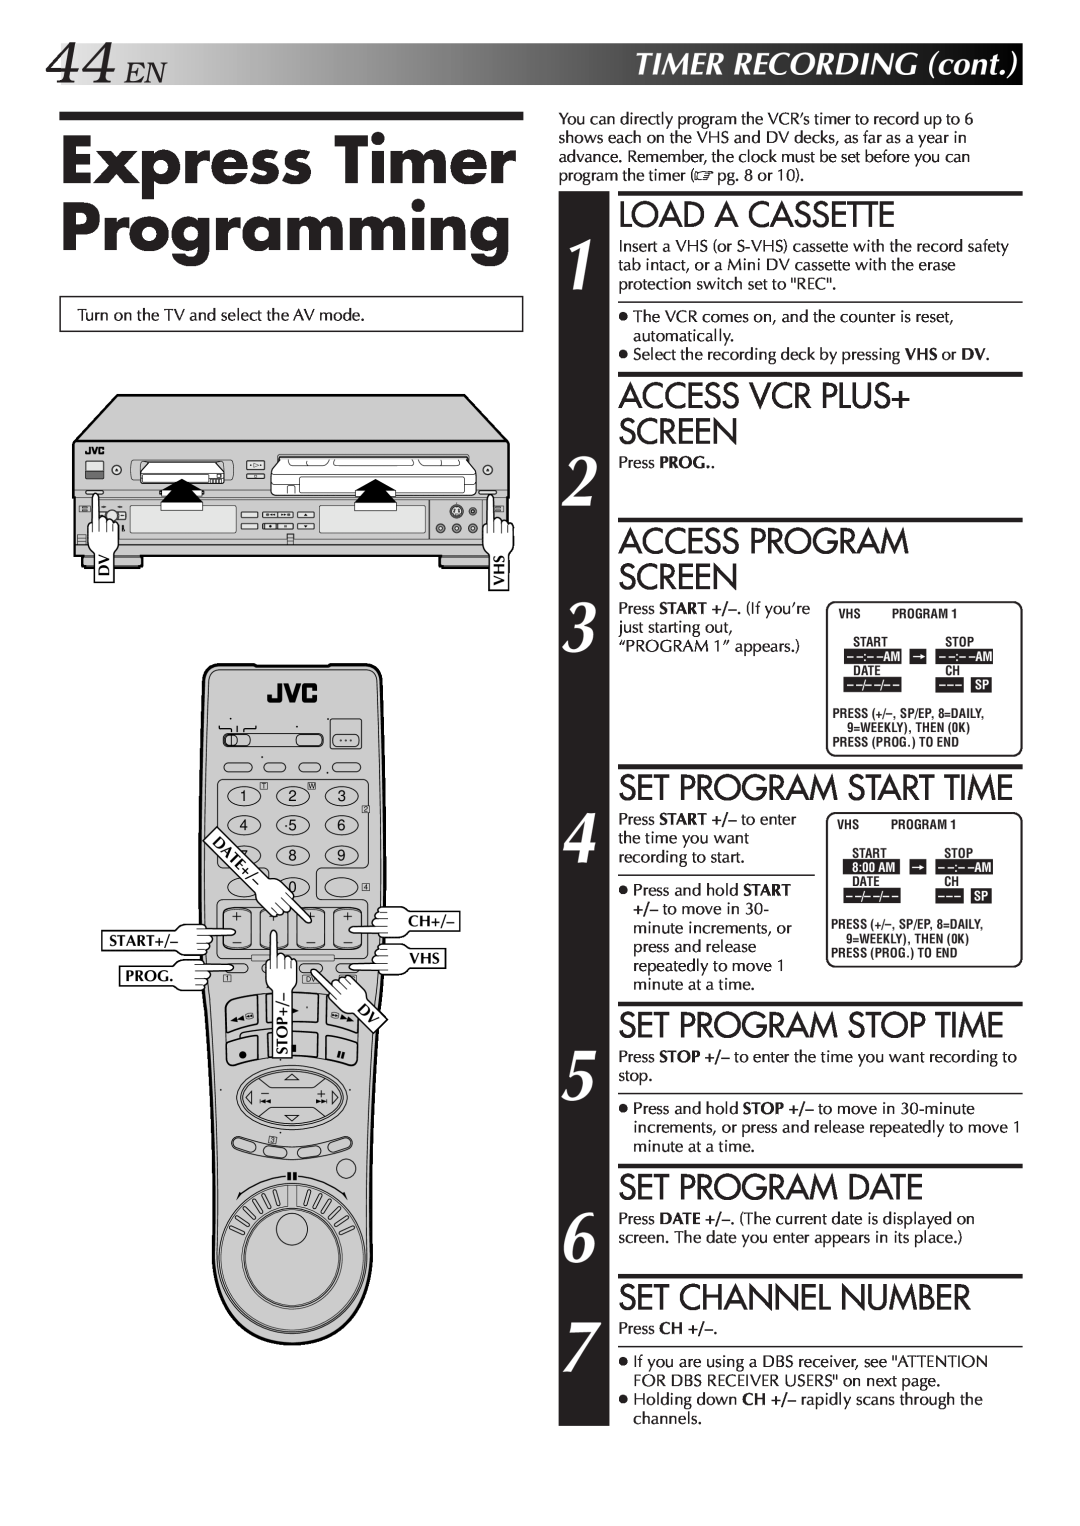 JVC SR-VS10U Express Timer Programming, Set Program Date, Set Channel Number, 44ENTIMERRECORDINGcont, Load A Cassette 